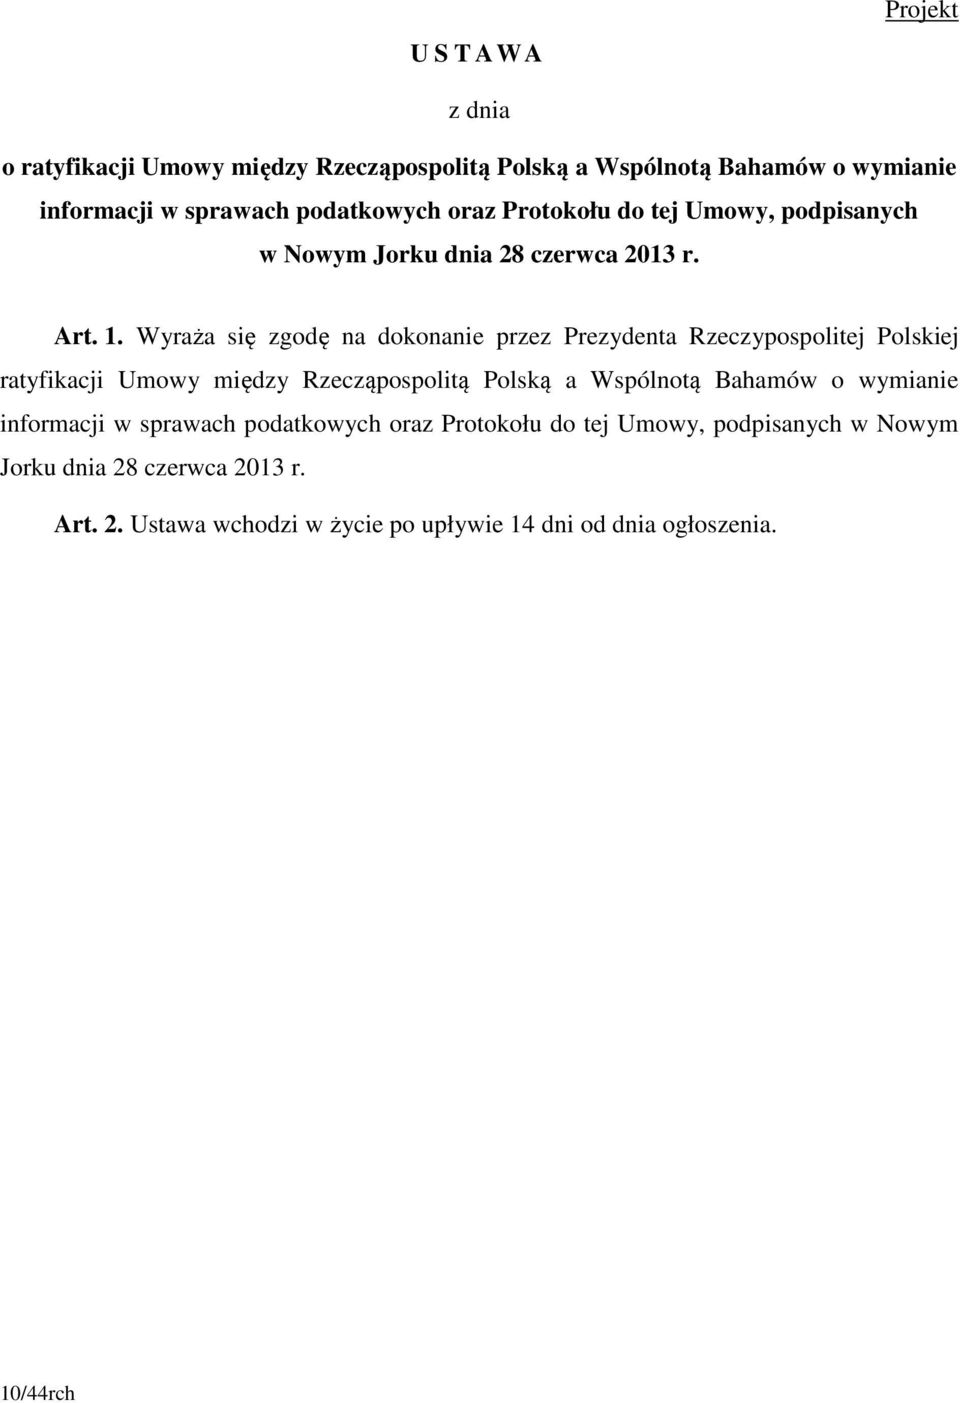 Wyraża się zgodę na dokonanie przez Prezydenta Rzeczypospolitej Polskiej ratyfikacji Umowy między Rzecząpospolitą Polską a Wspólnotą Bahamów o